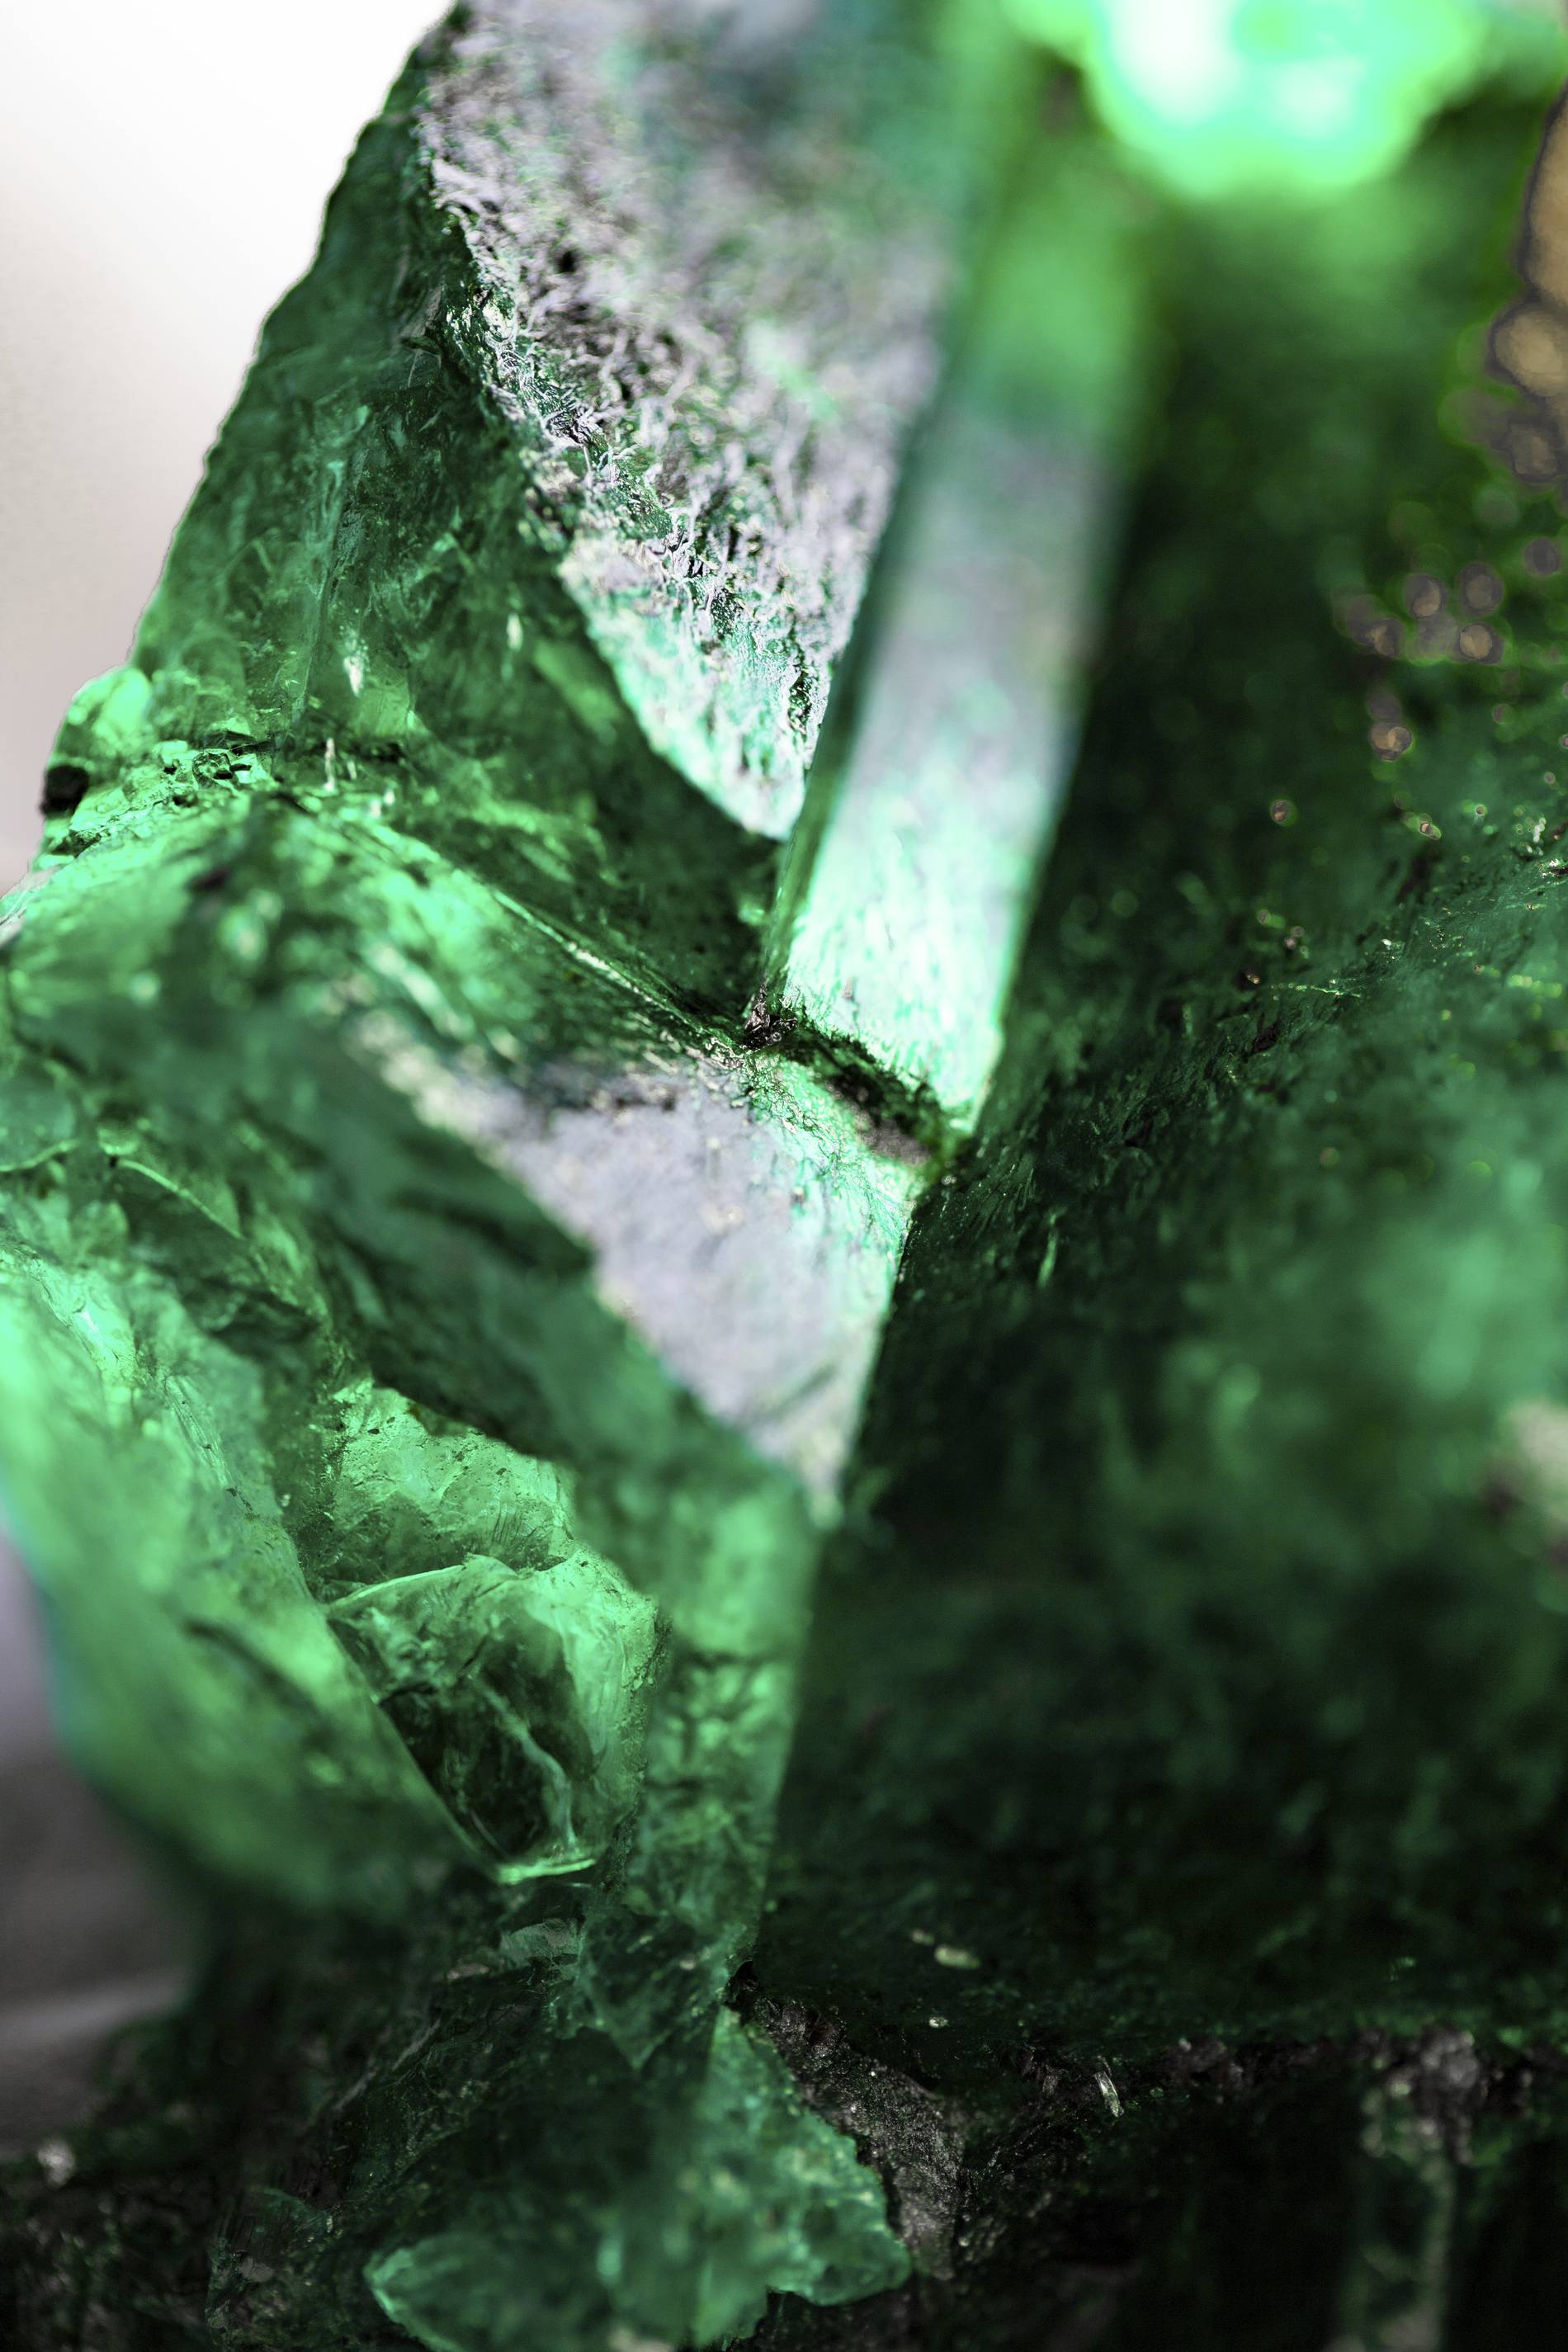 Gemfields' Chipembele emerald detail